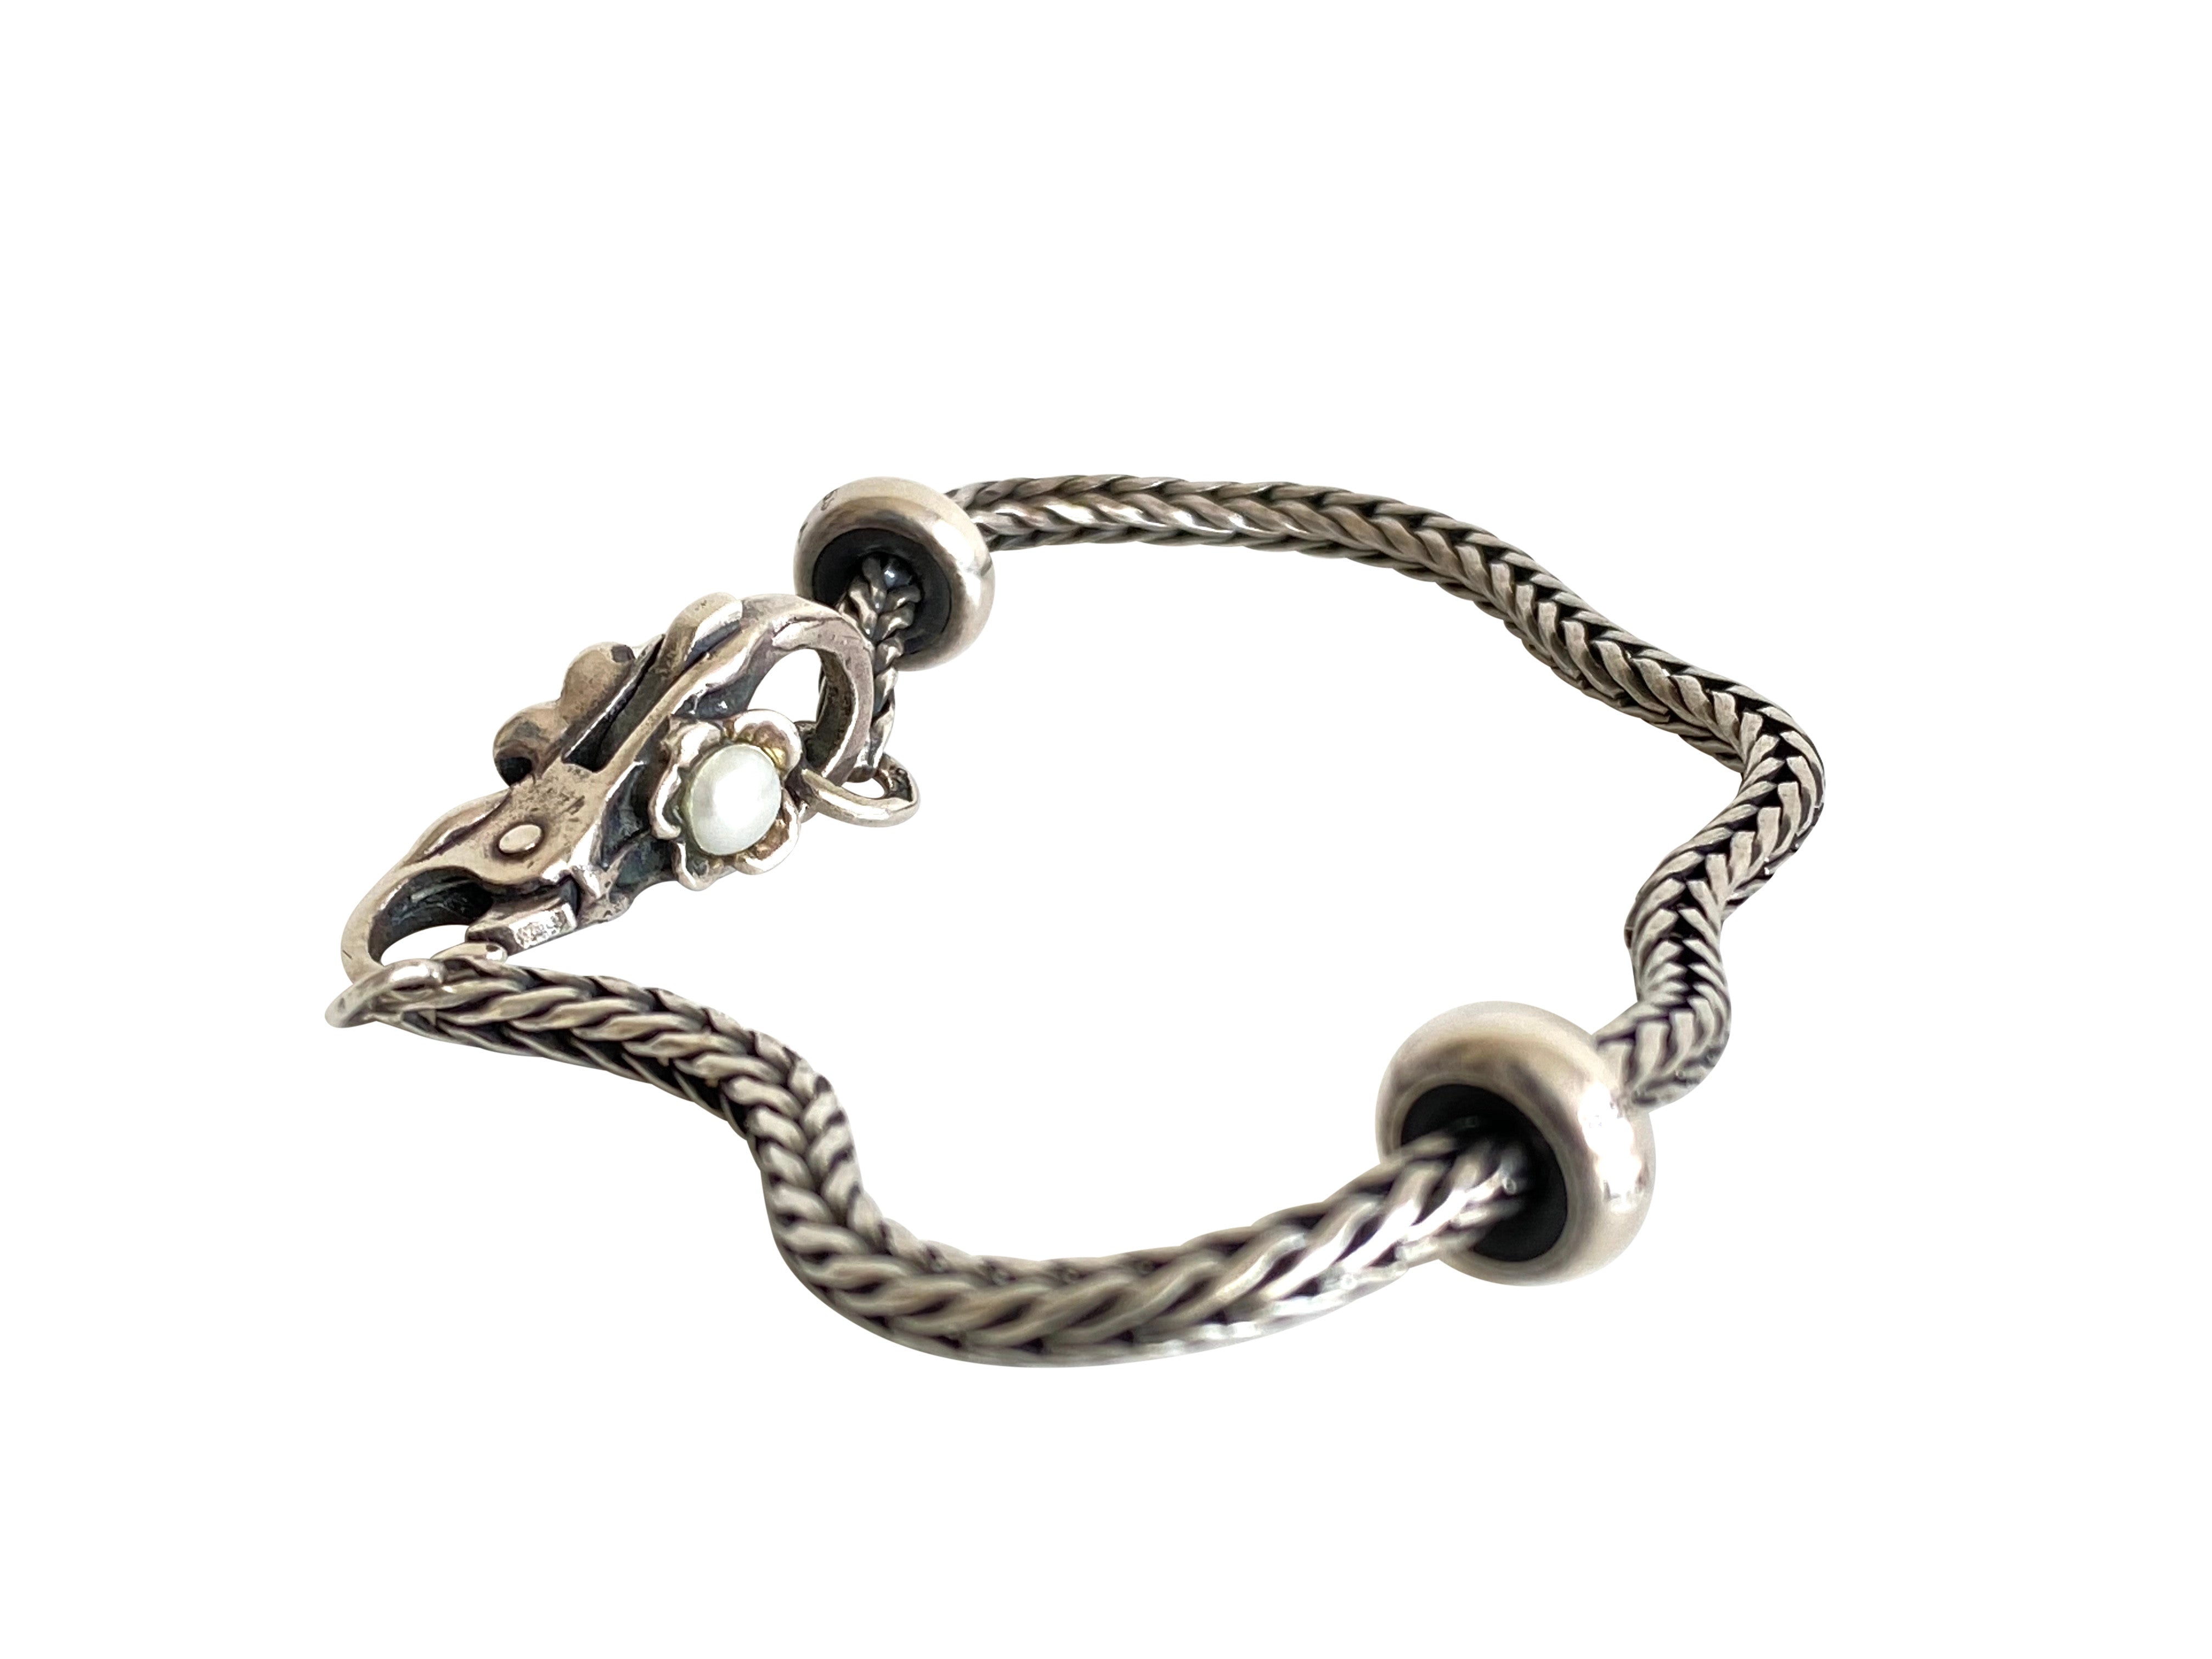 Danish Silver Charm Bracelet, Trollbeads.